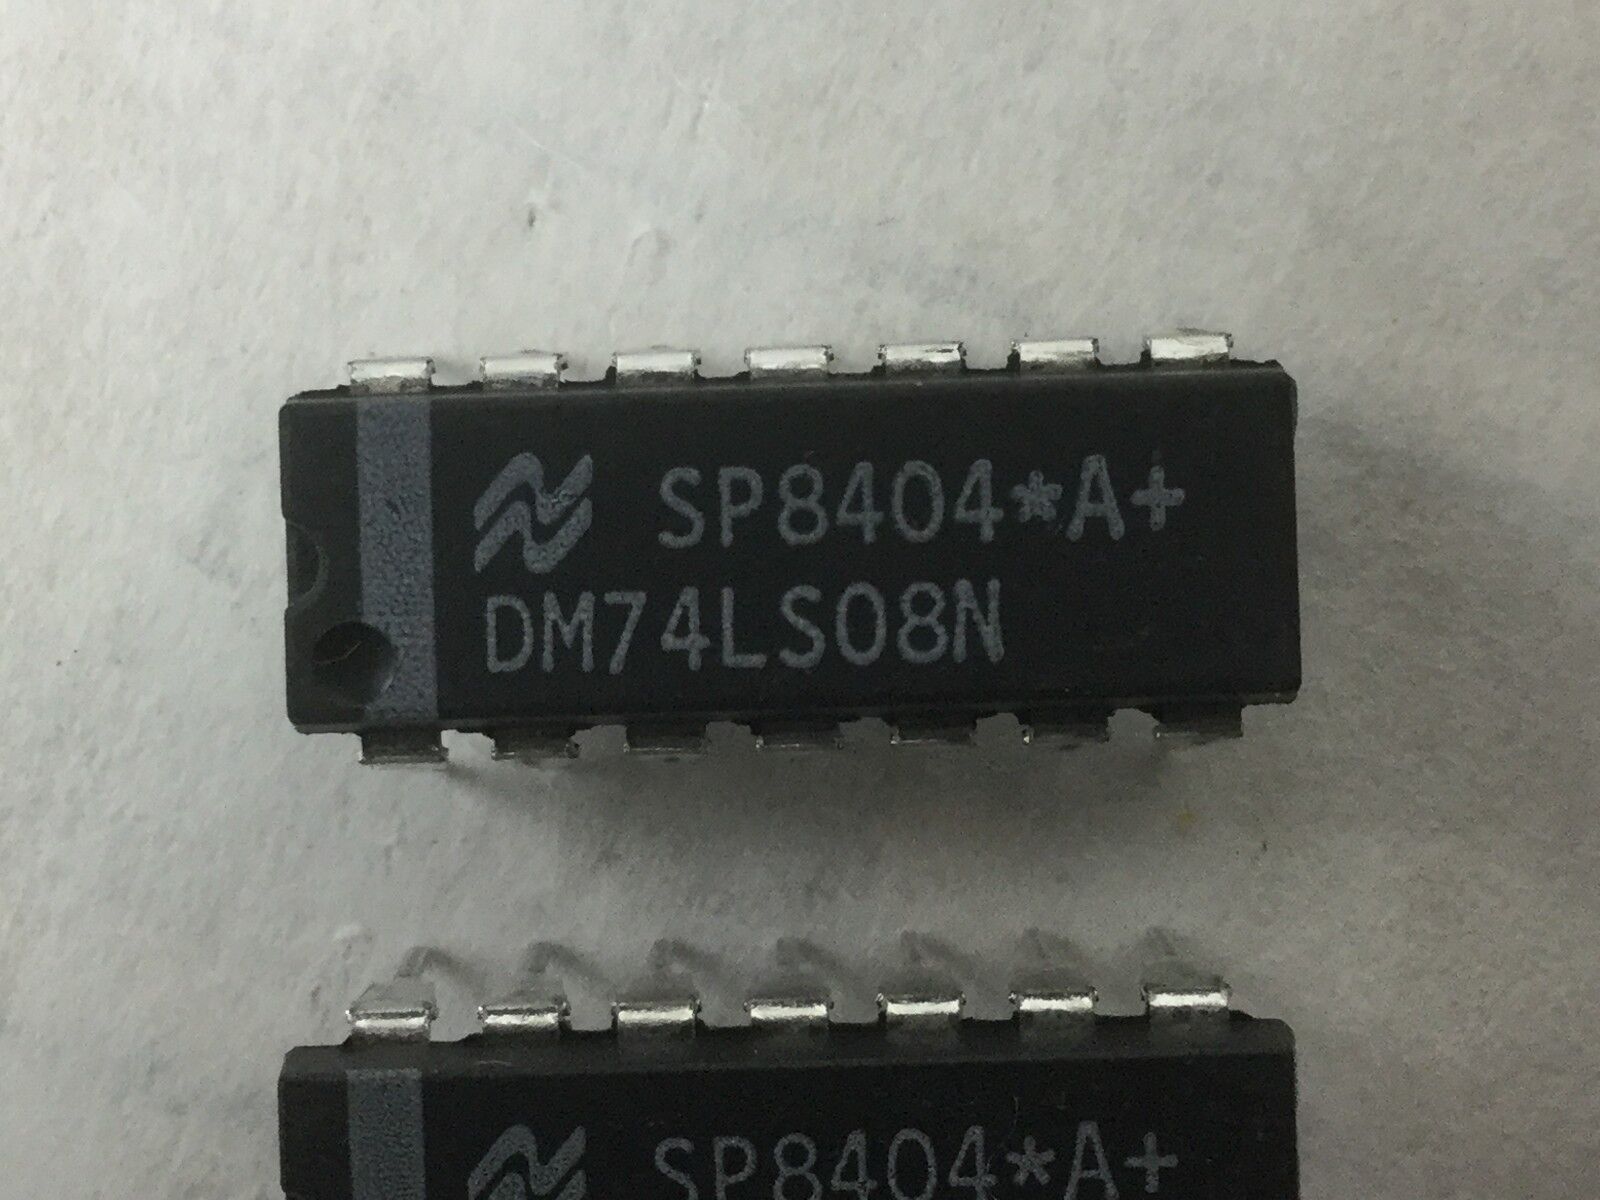 DM74LS08N (SP8404), 14 Pin Dip (Lot of 6) NEW